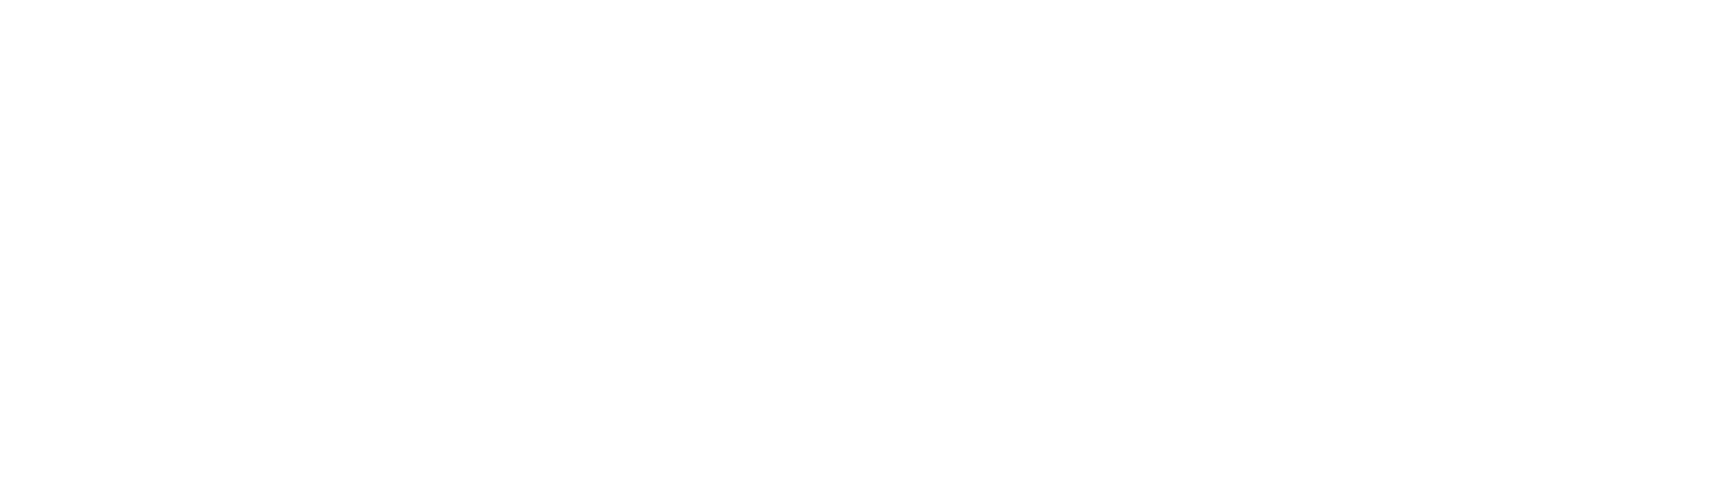 Hiflow partner